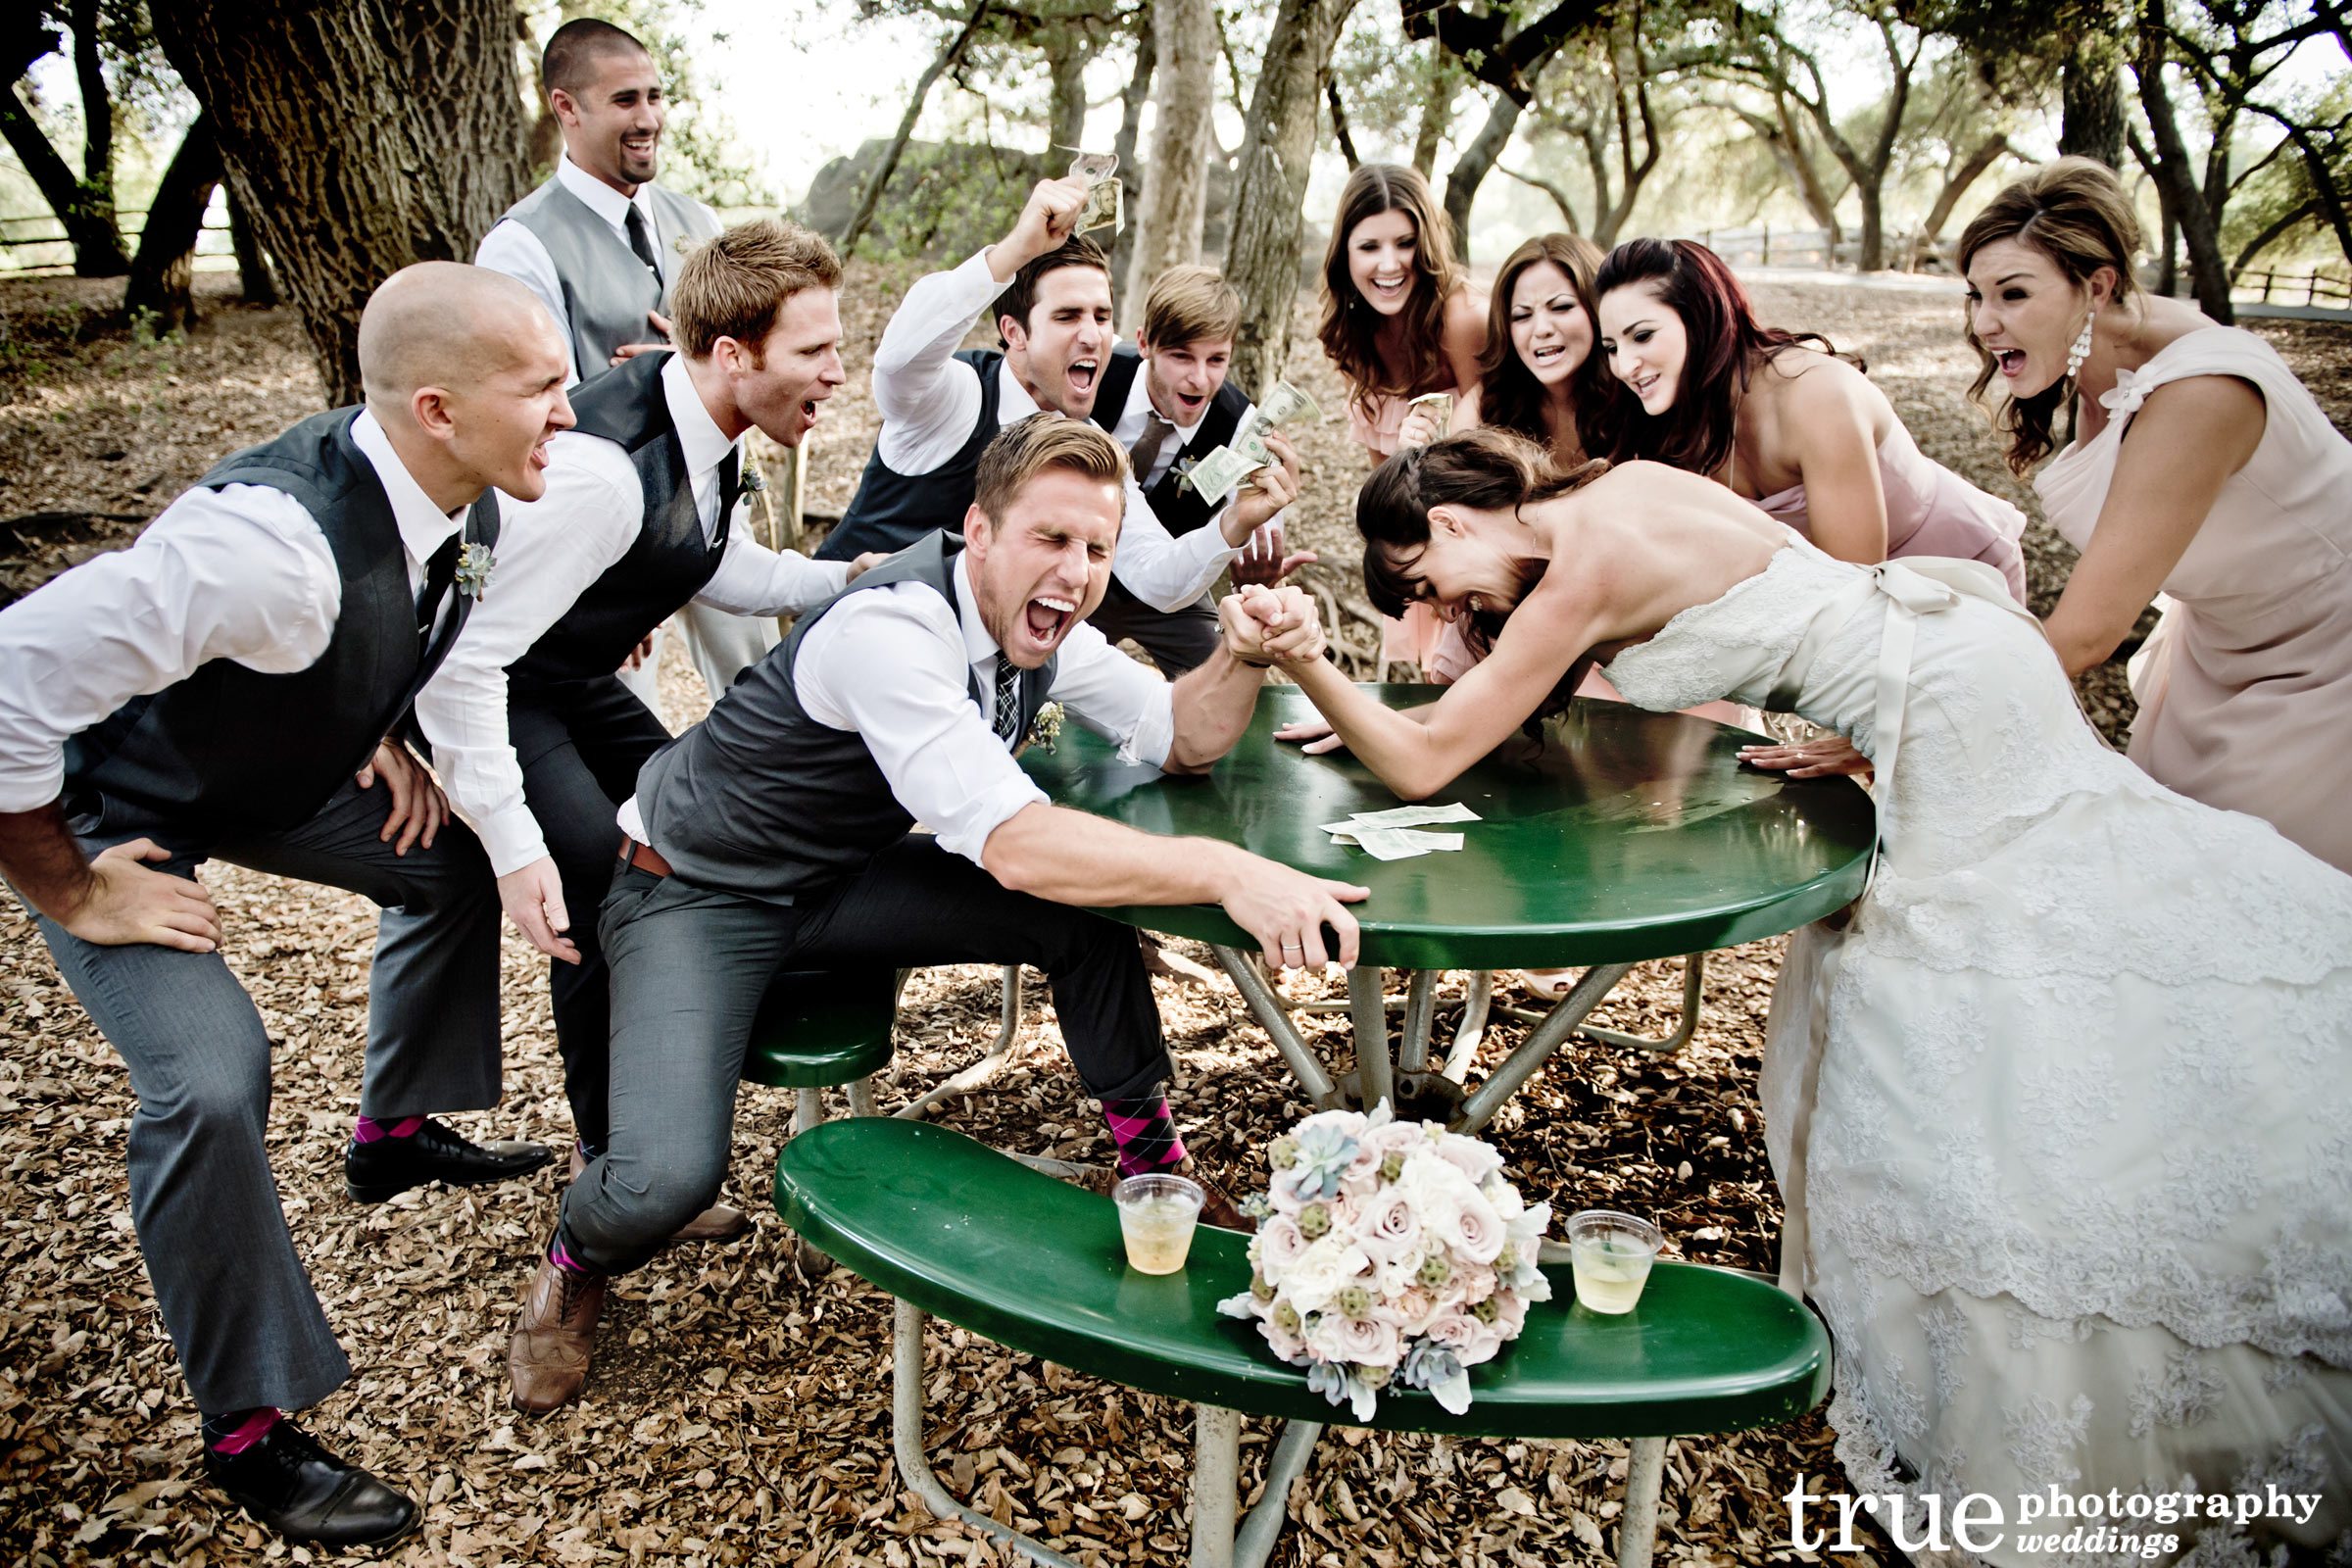 16 Fun and LOL-Worthy Wedding Party Photo Ideas